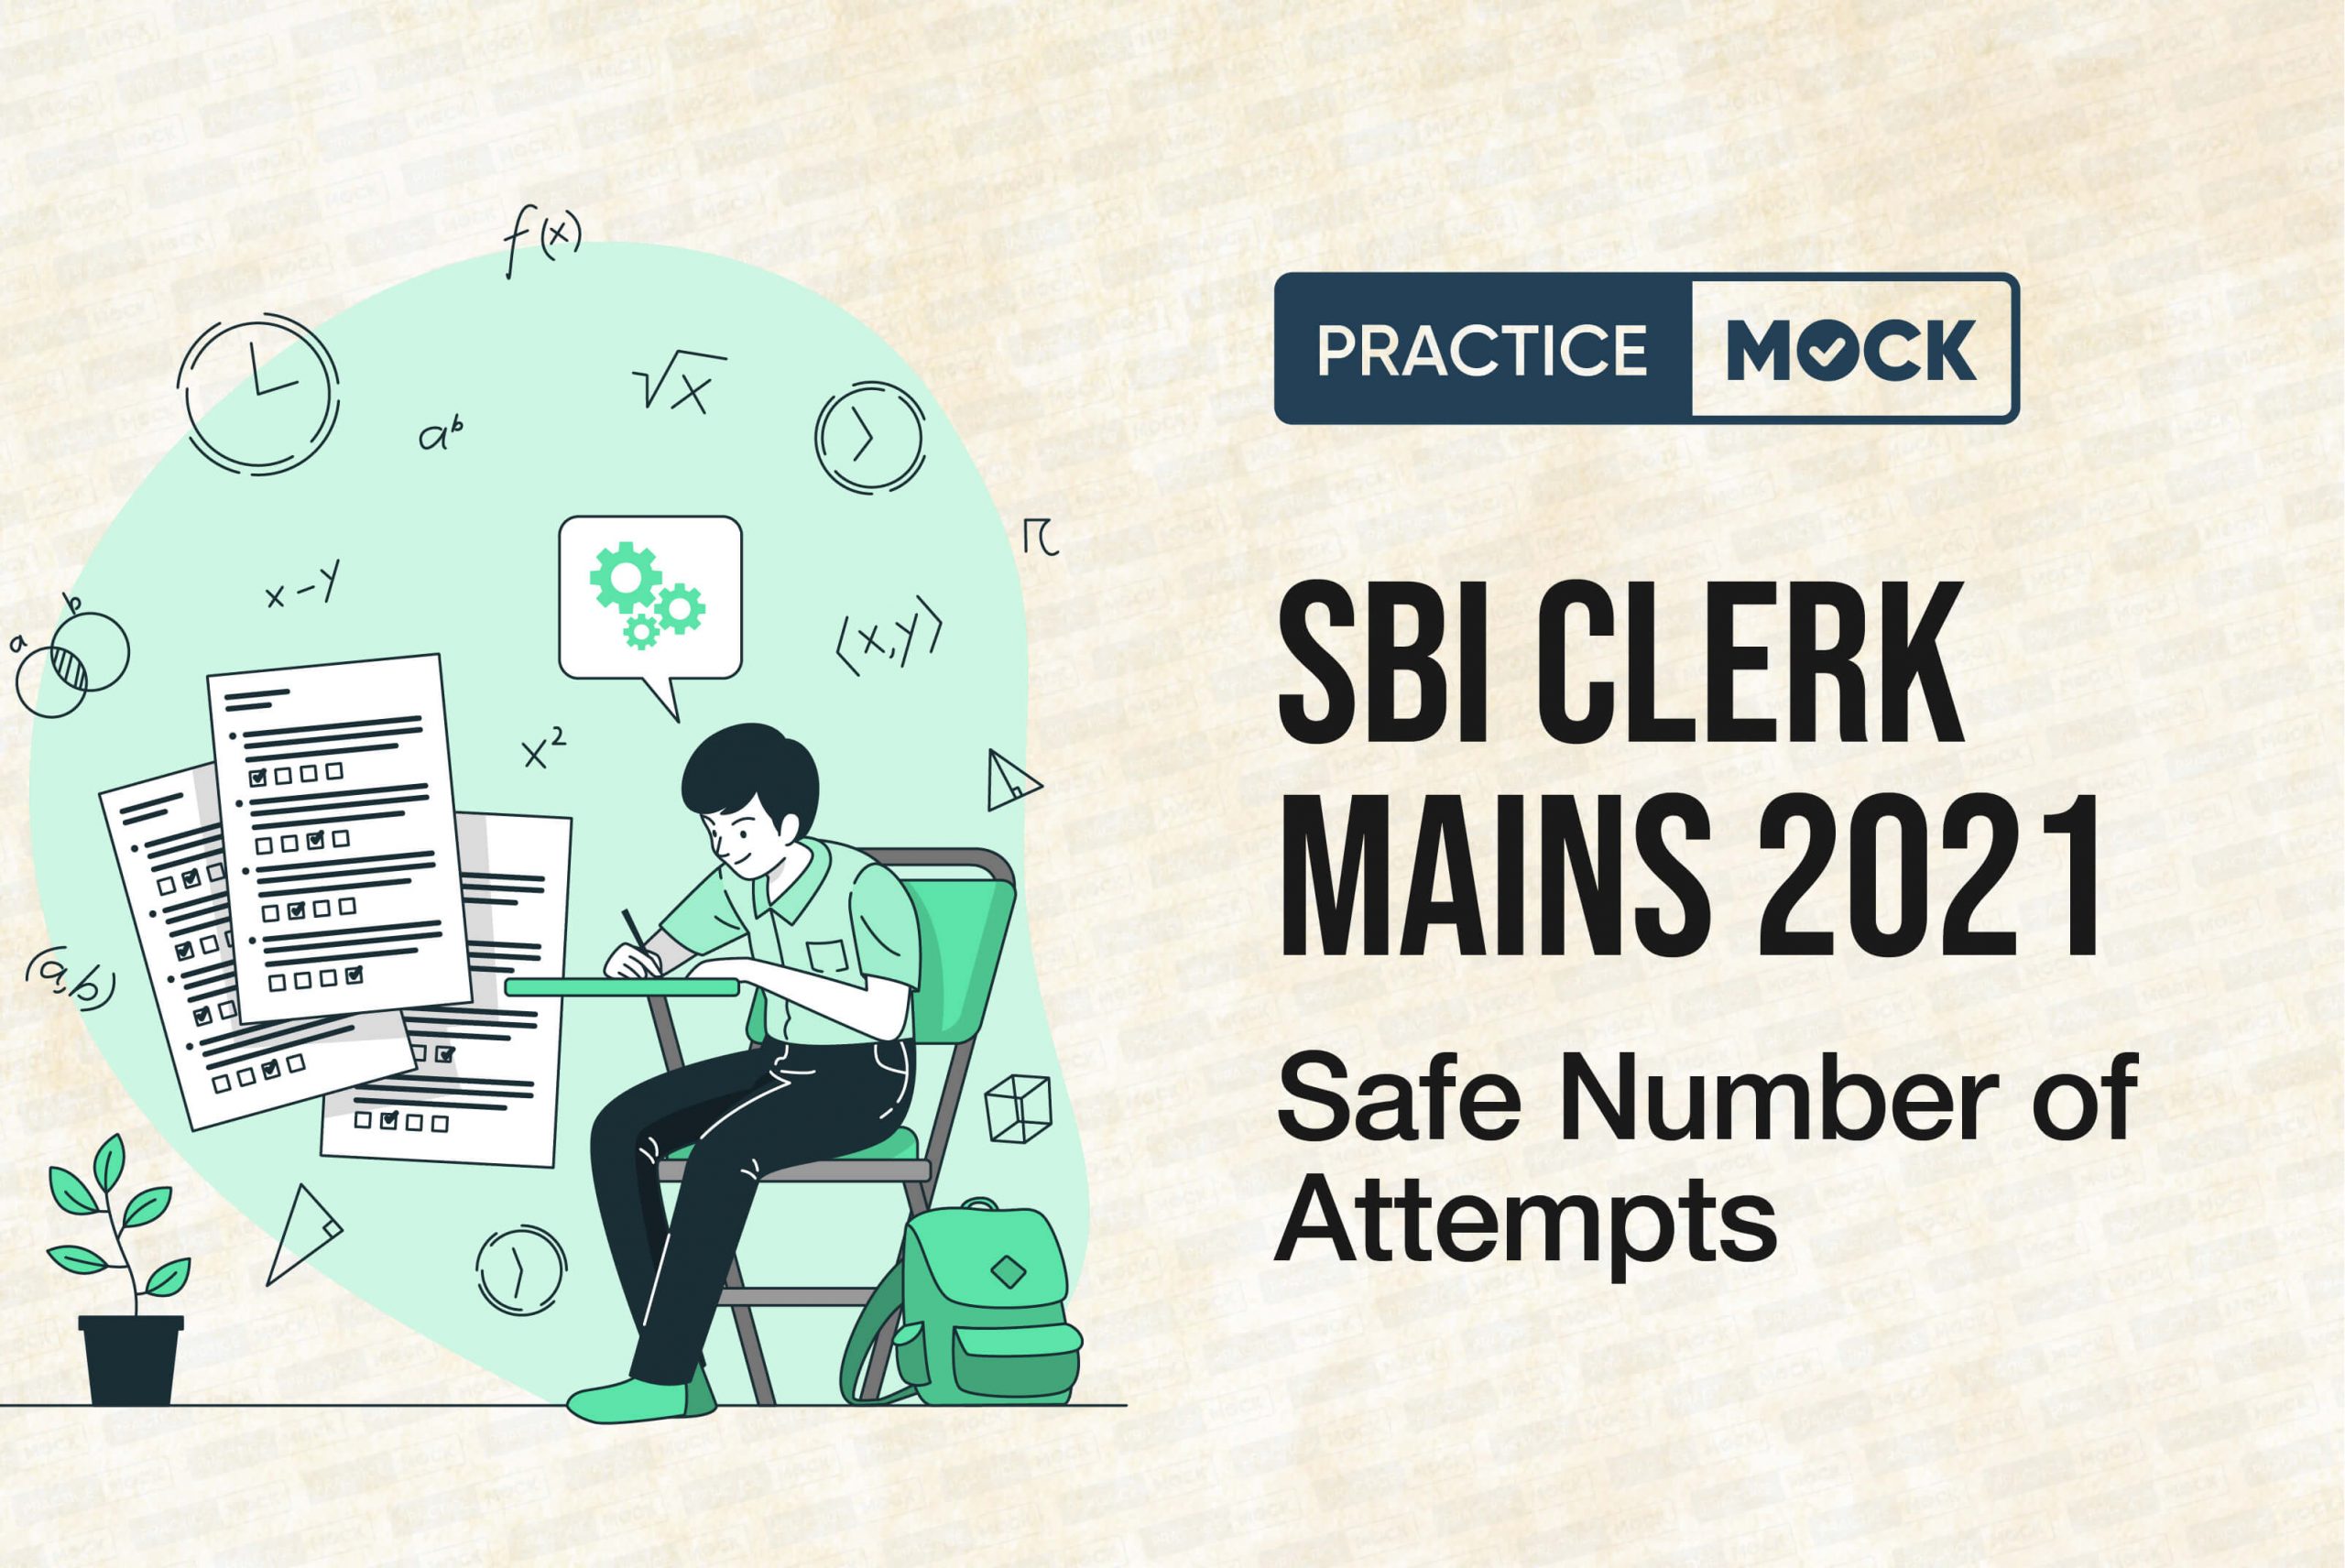 SBI Clerk Mains 2021 Safe number of attempts